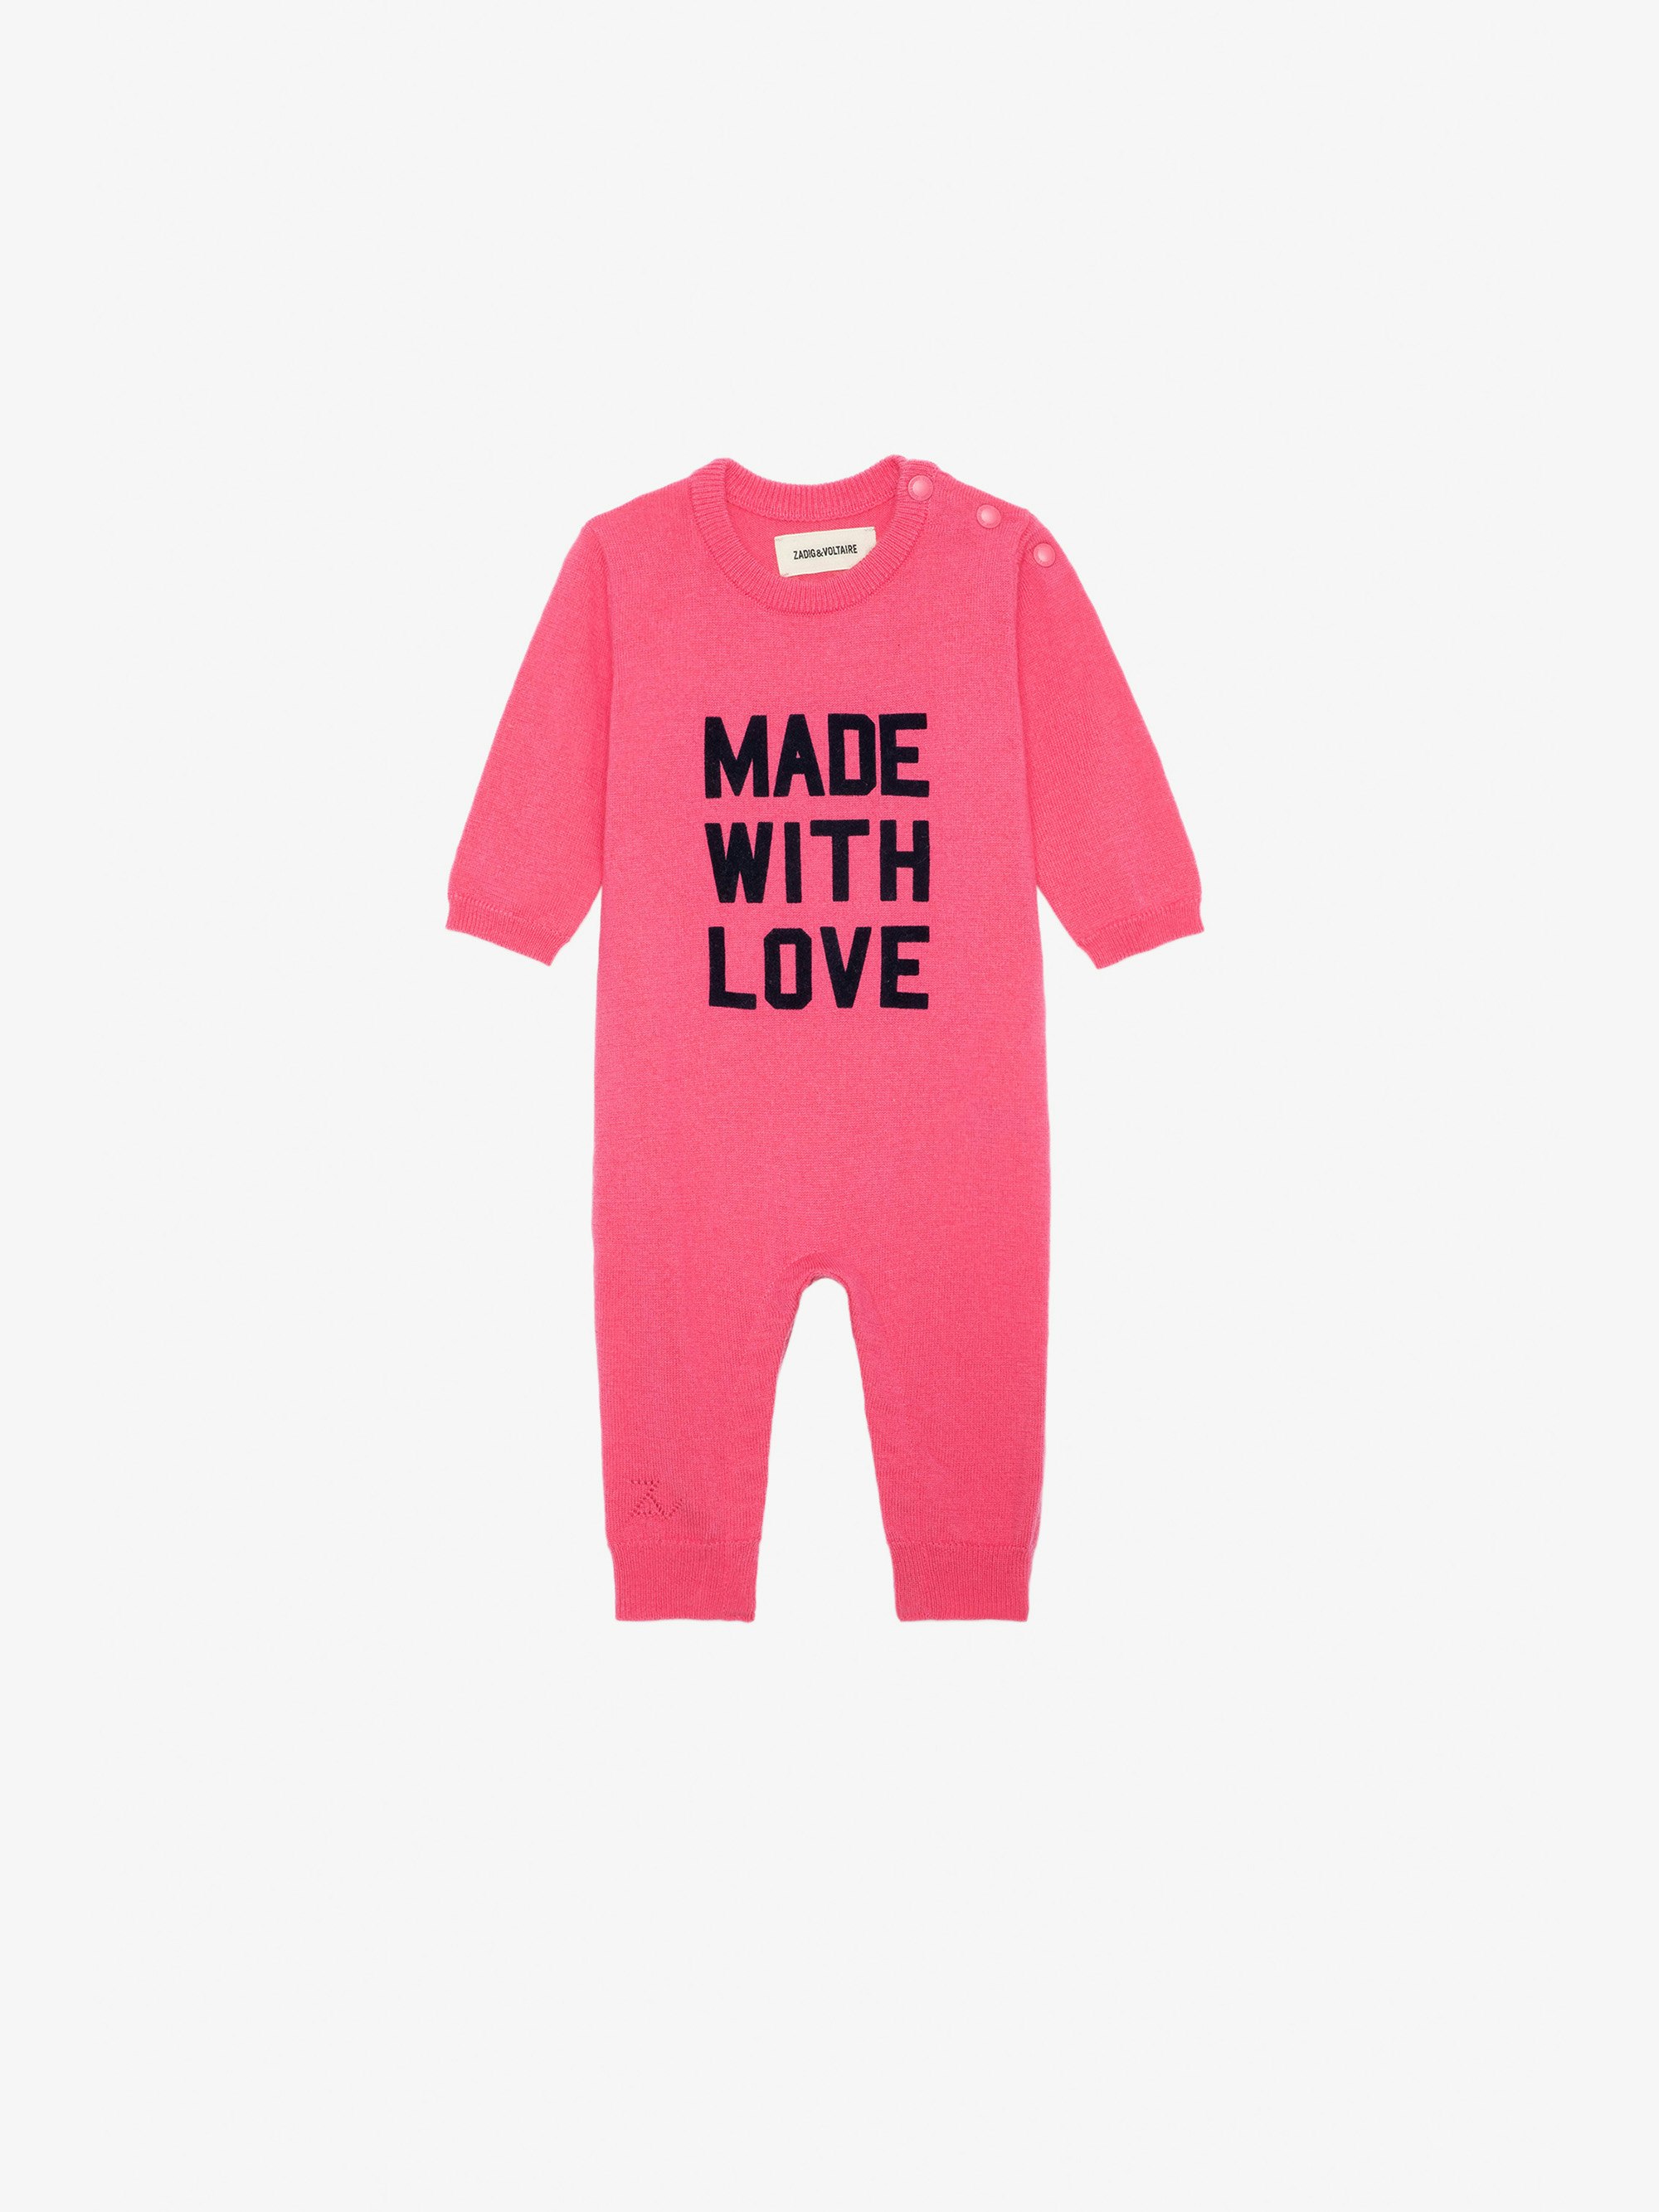 Tuta intera Didou Neonato - Tuta intera in maglia rosa con scritta "Made With Love" da neonato.